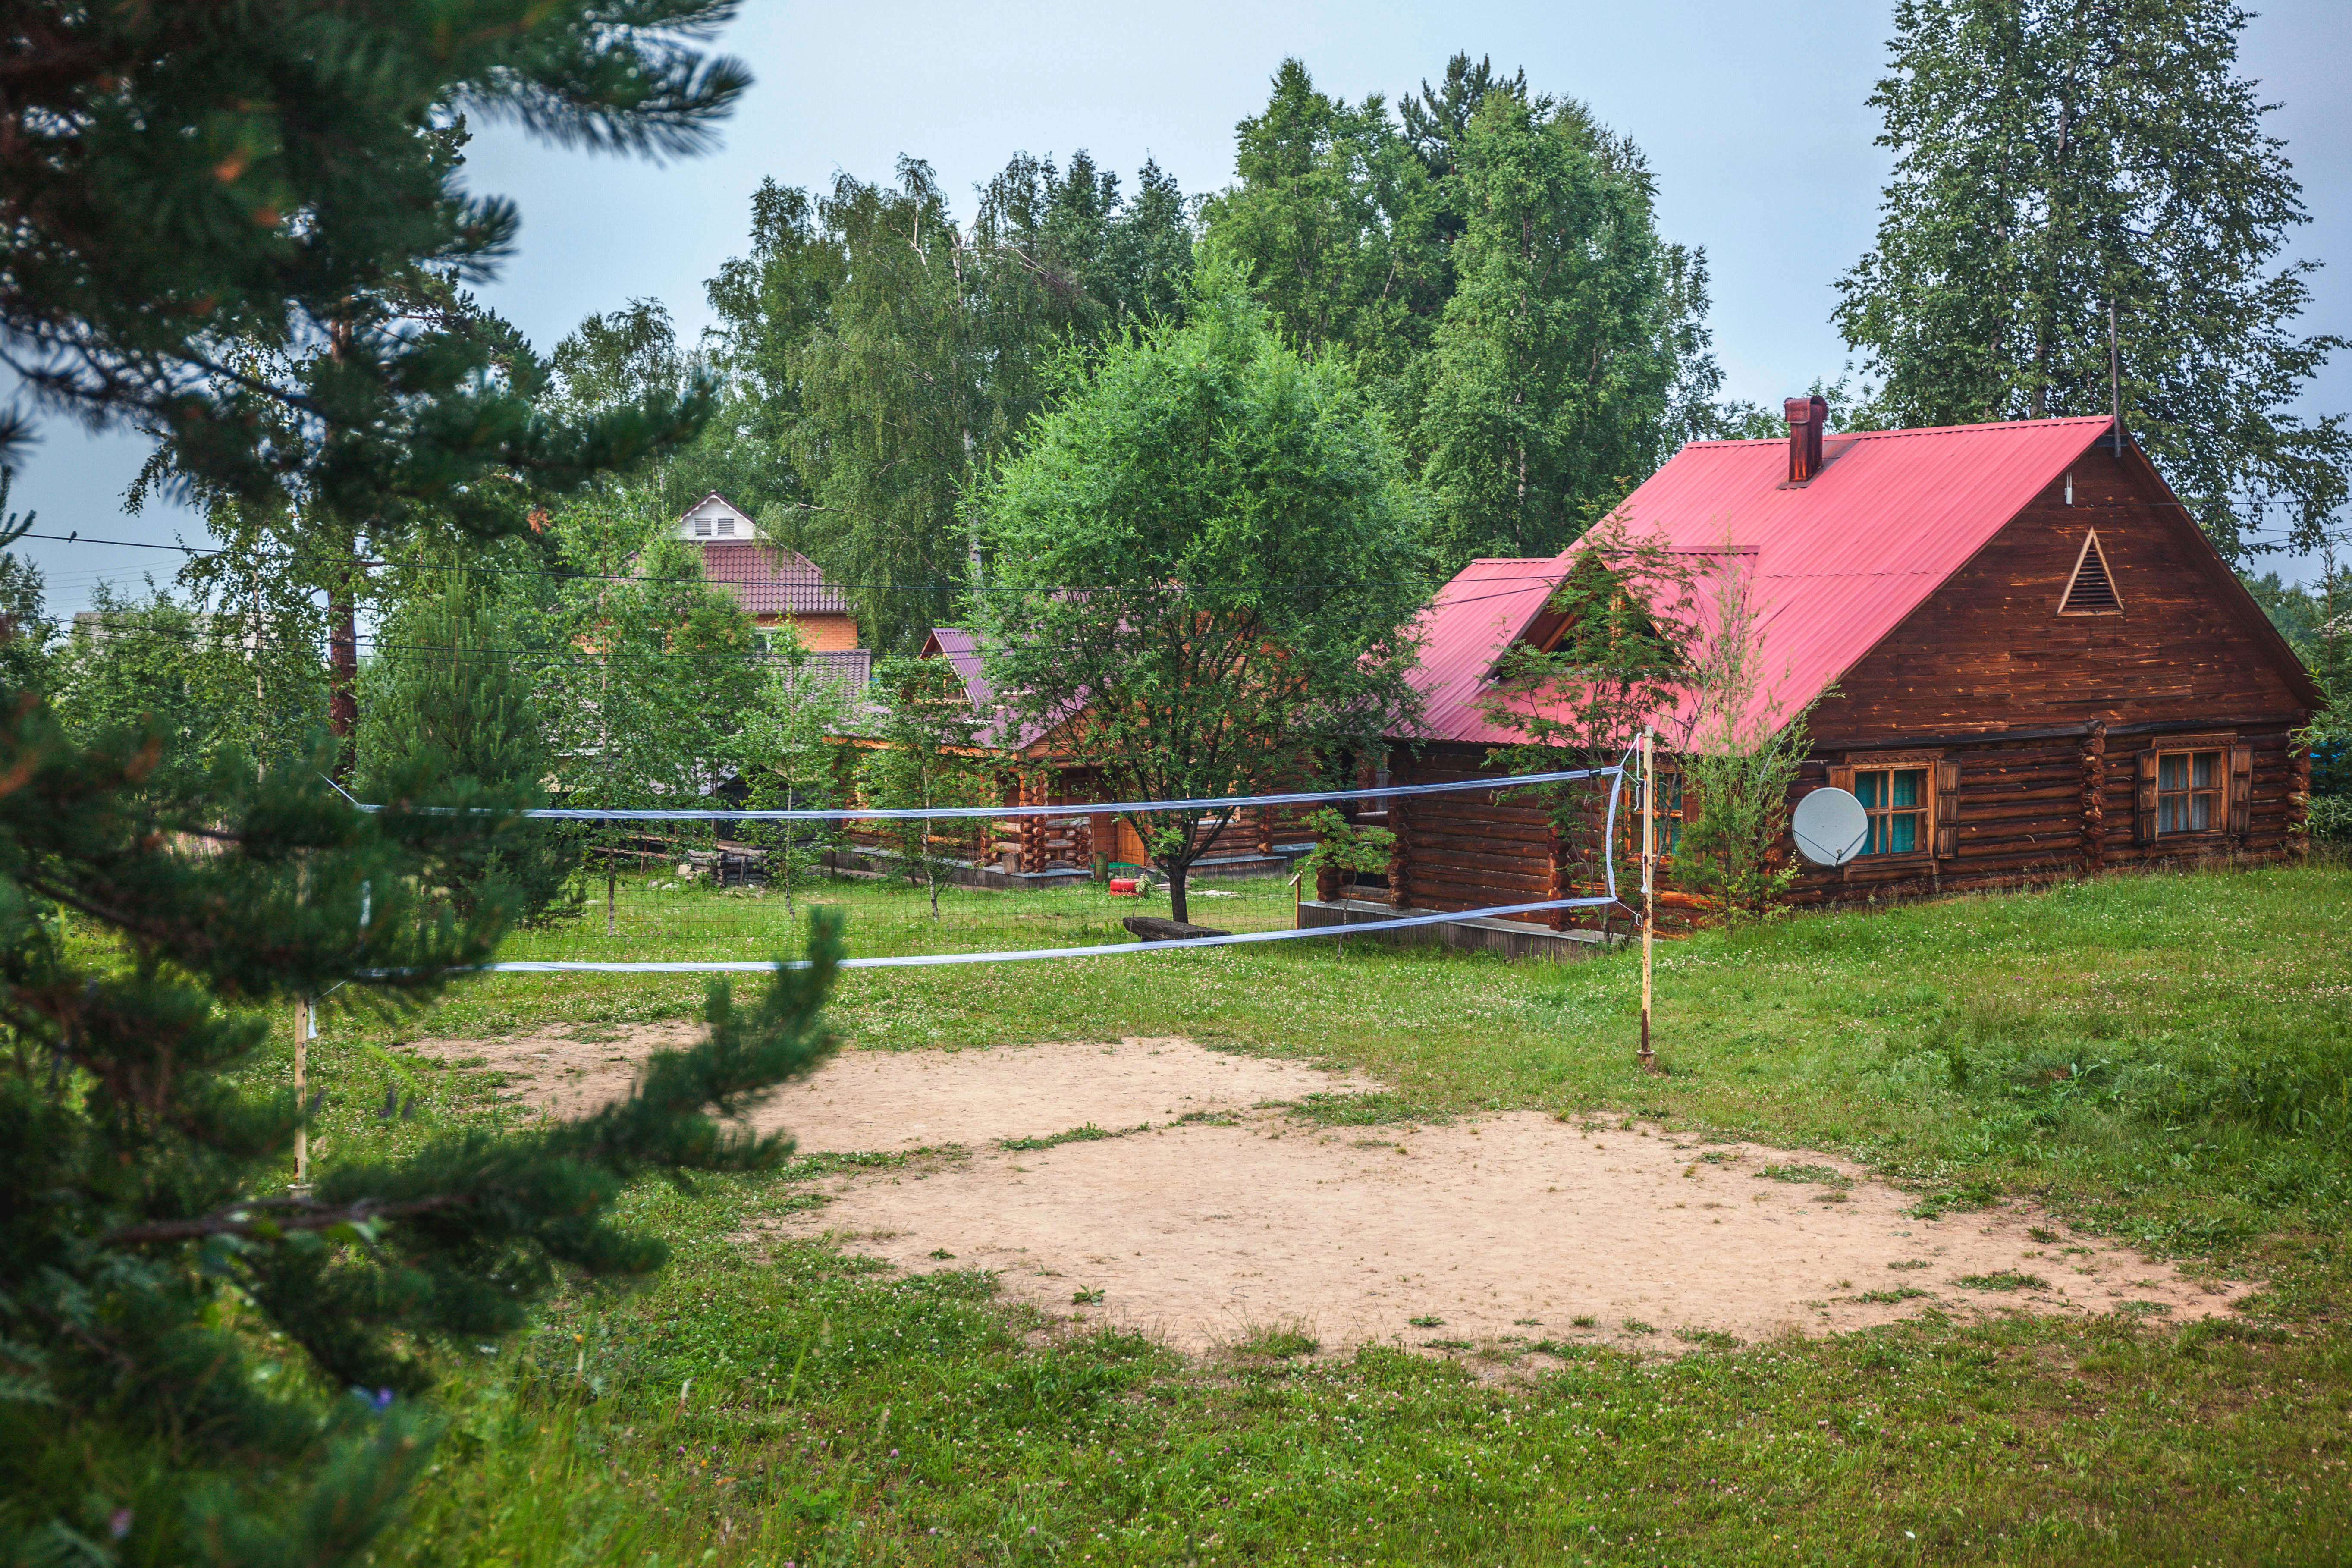 Между домами есть площадка с волейбольной сеткой.